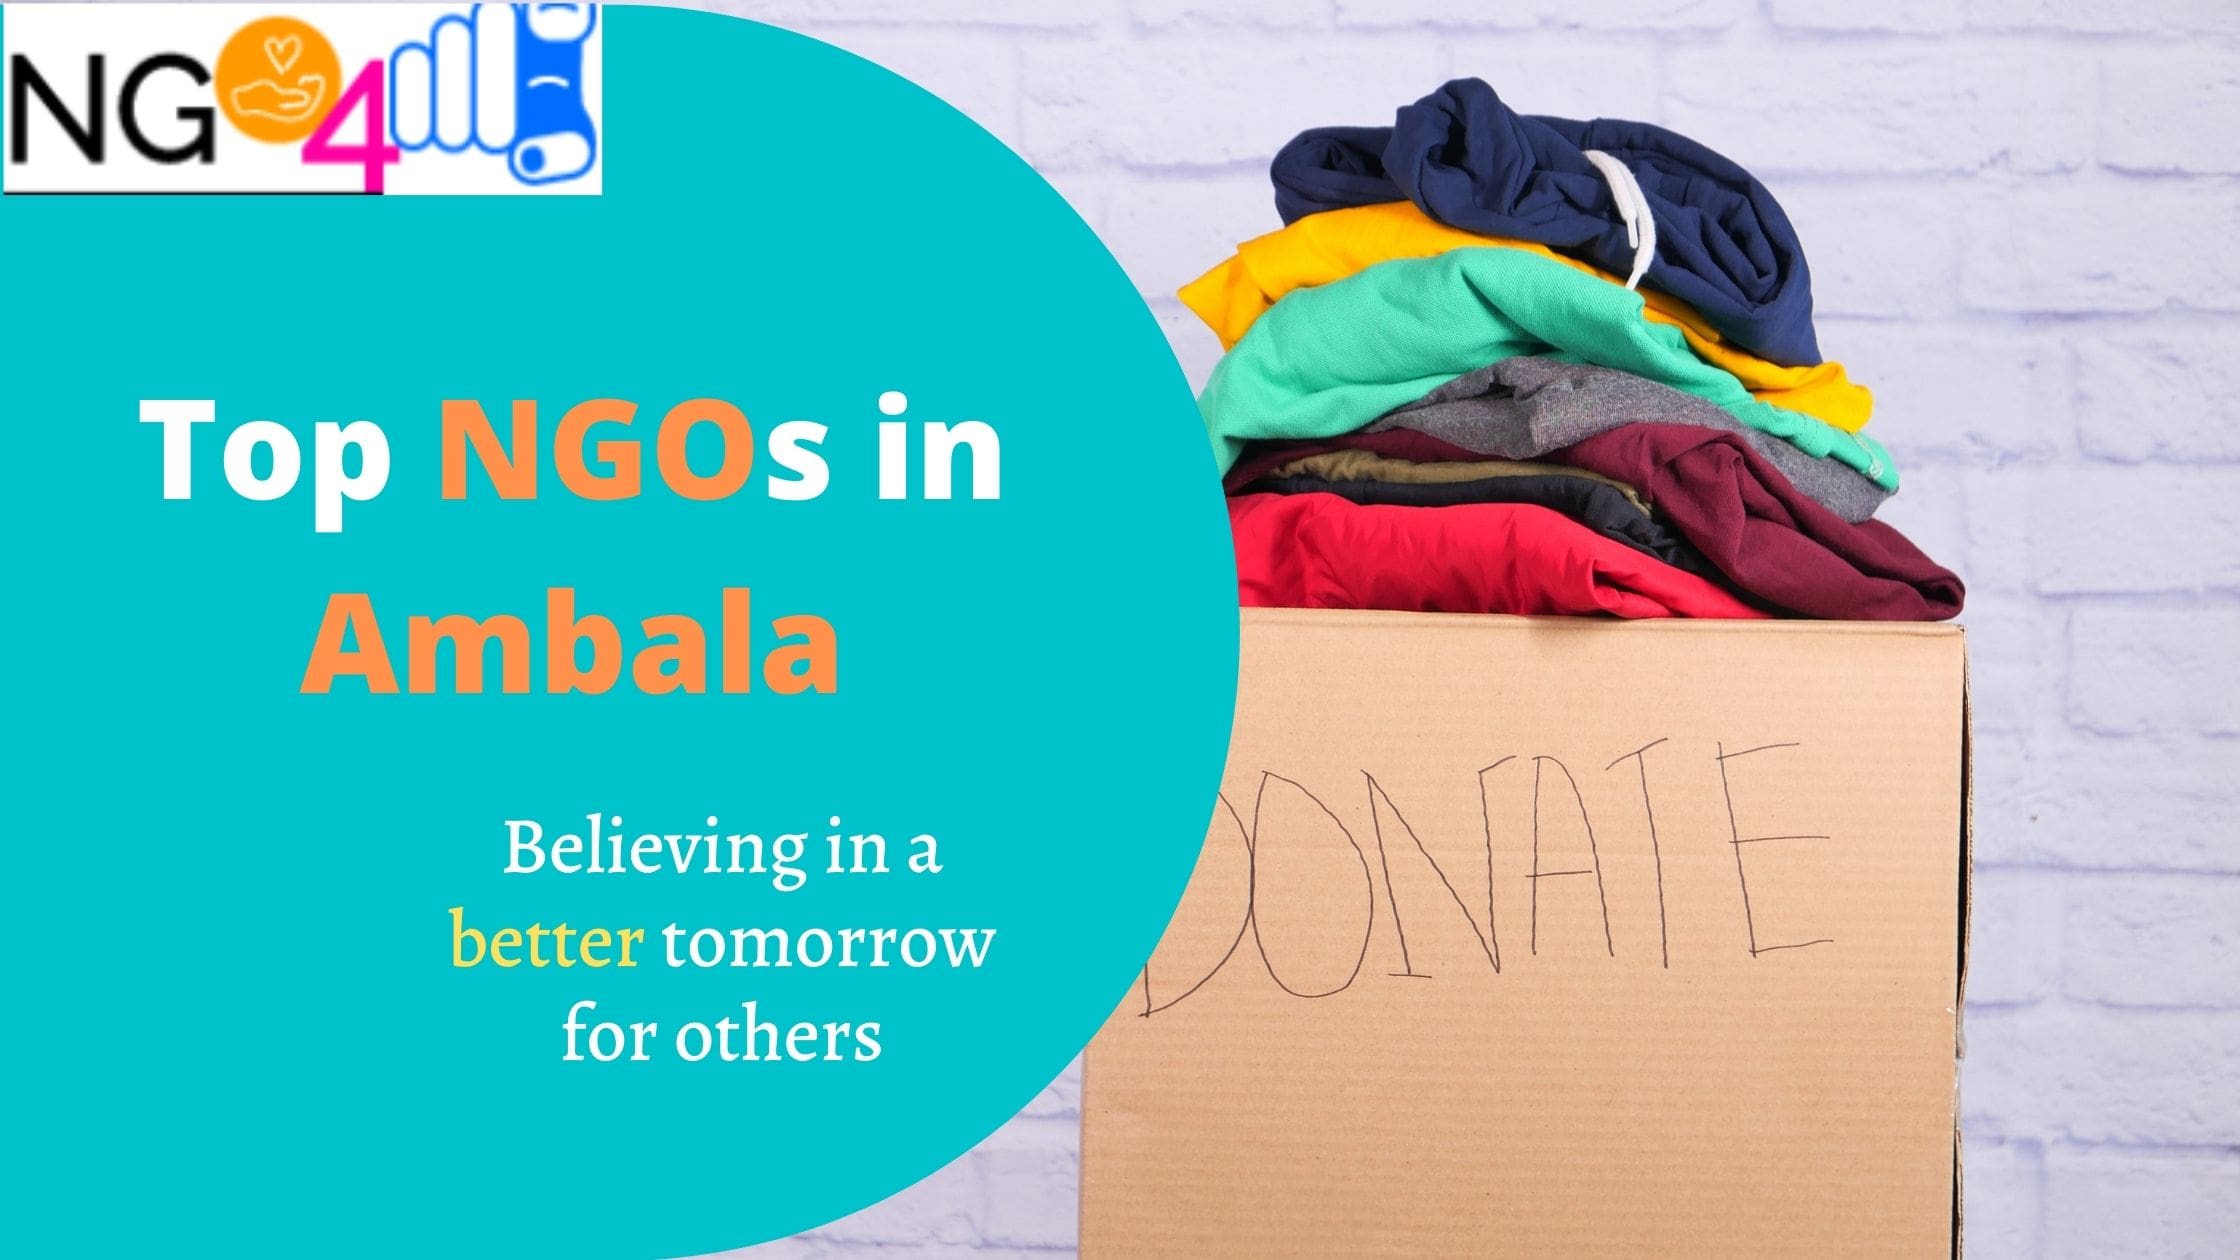 NGOs in Ambala